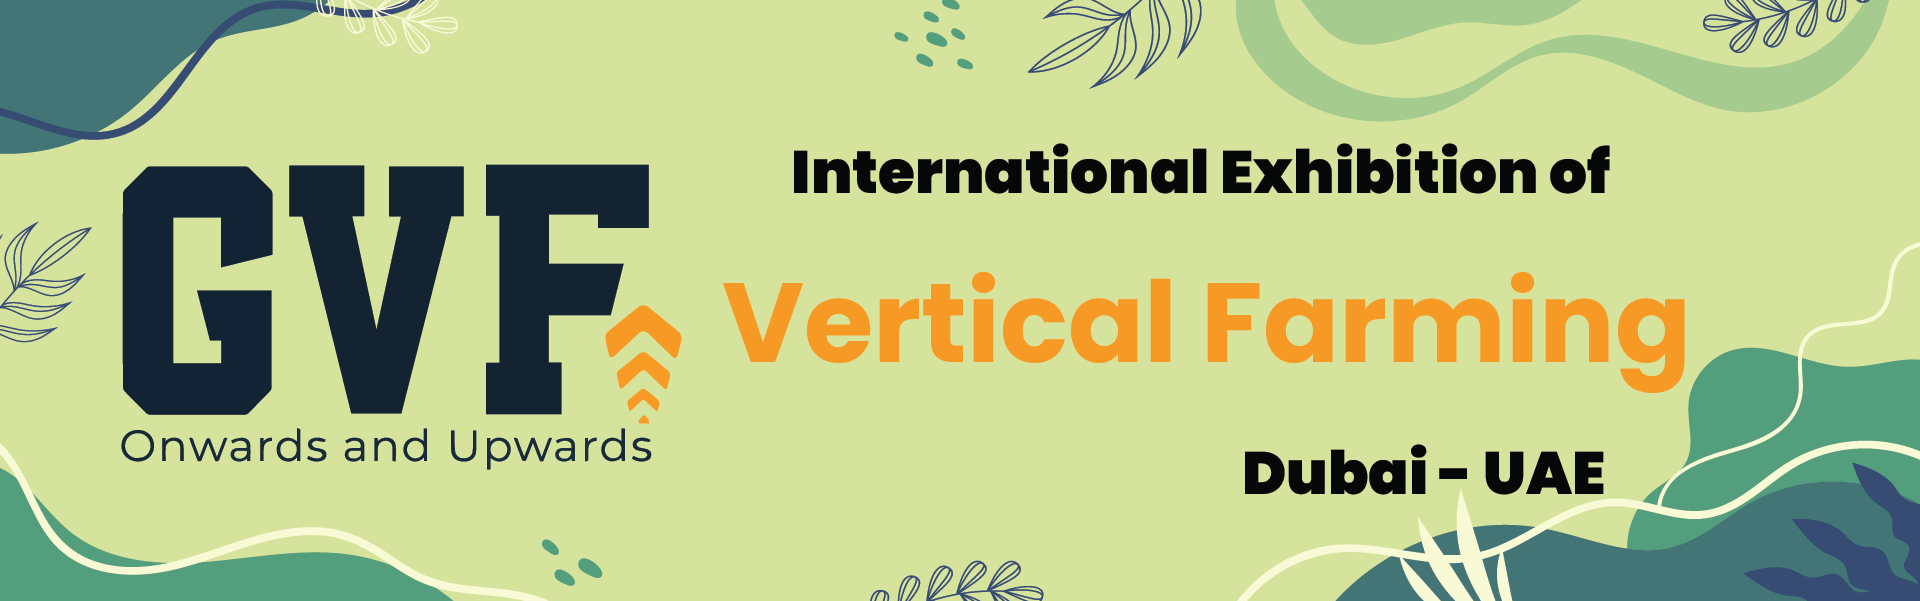 Vertical Farming Exhibition Dubai